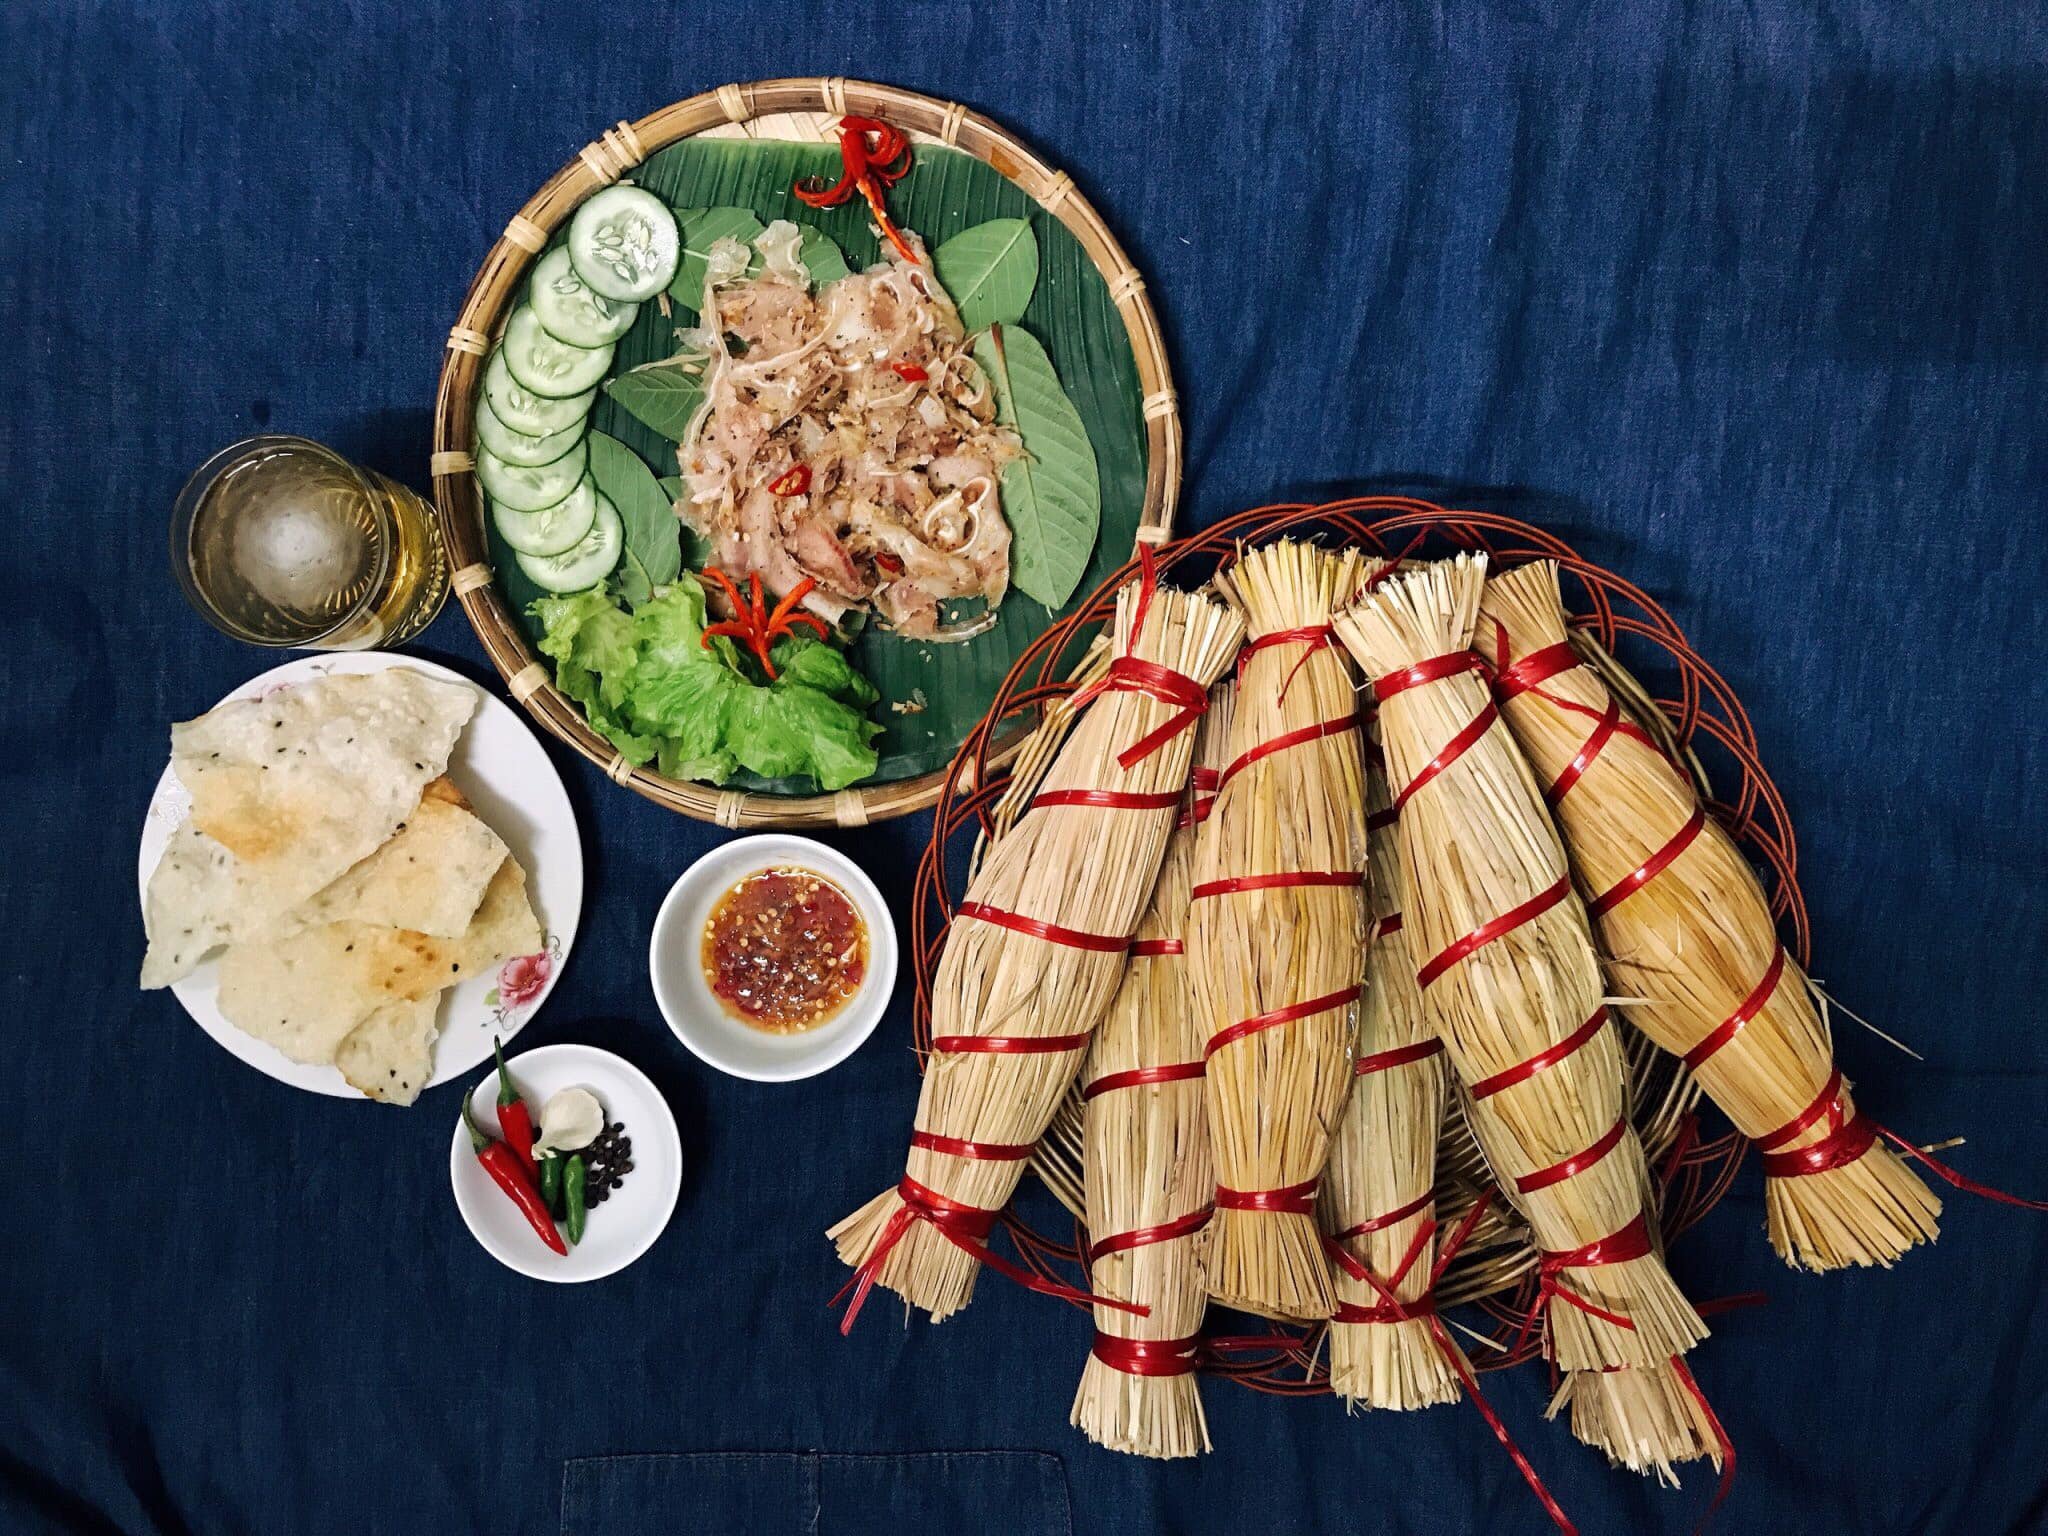 Tré là món ăn đặc sản của miền Trung